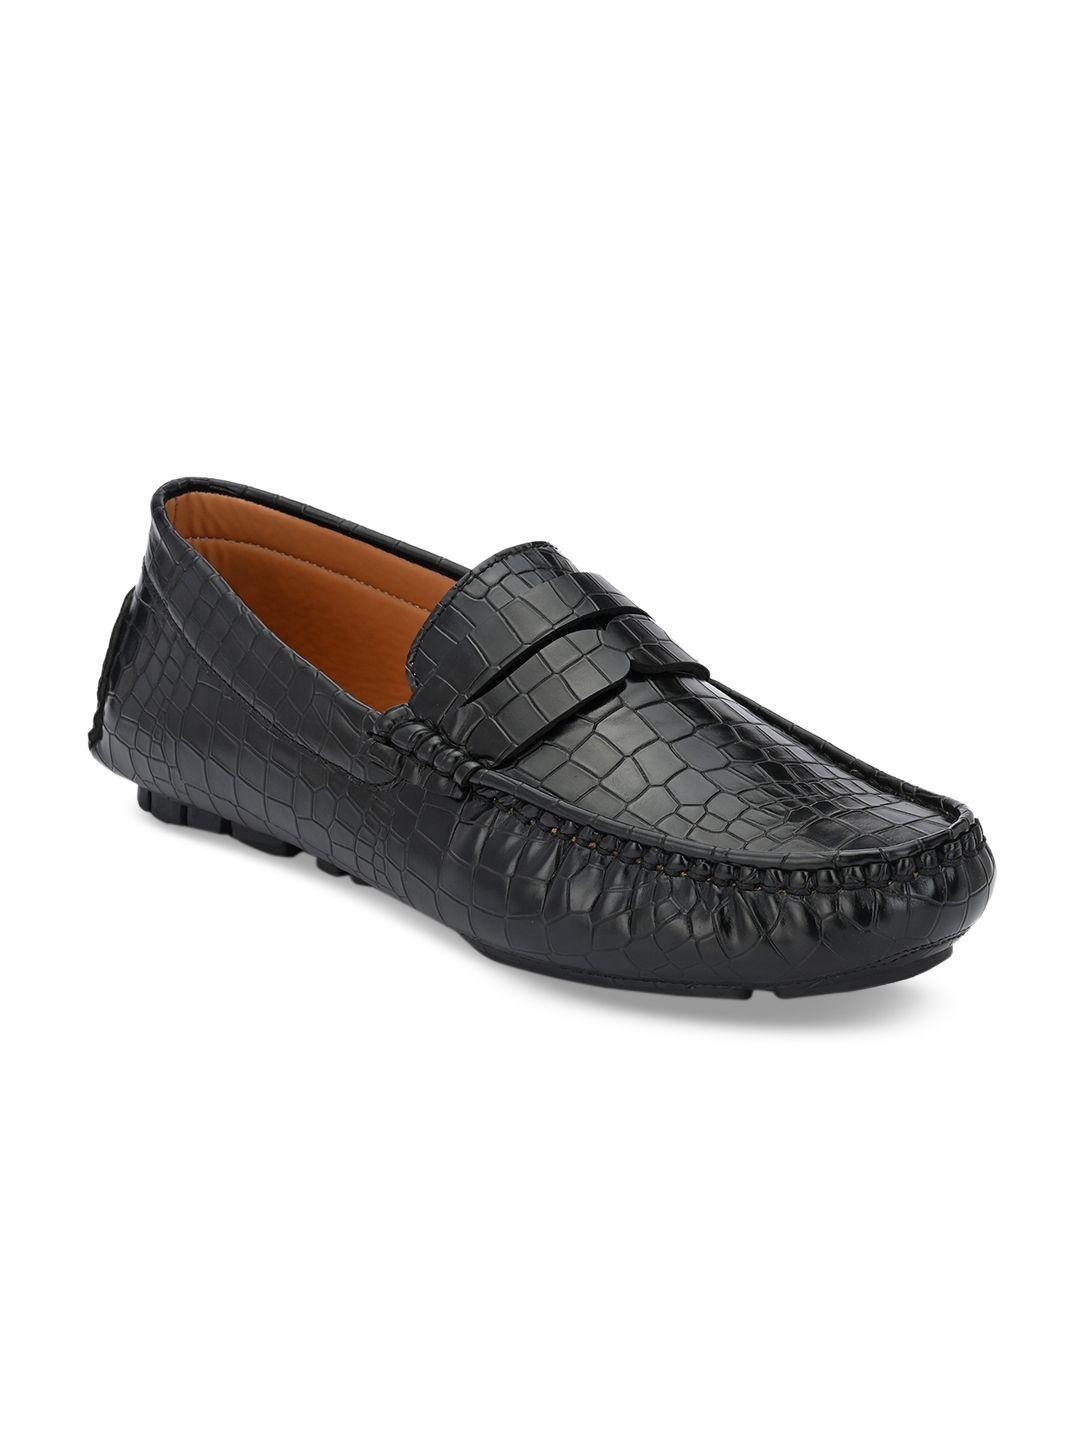 provogue-men-black-driving-shoes